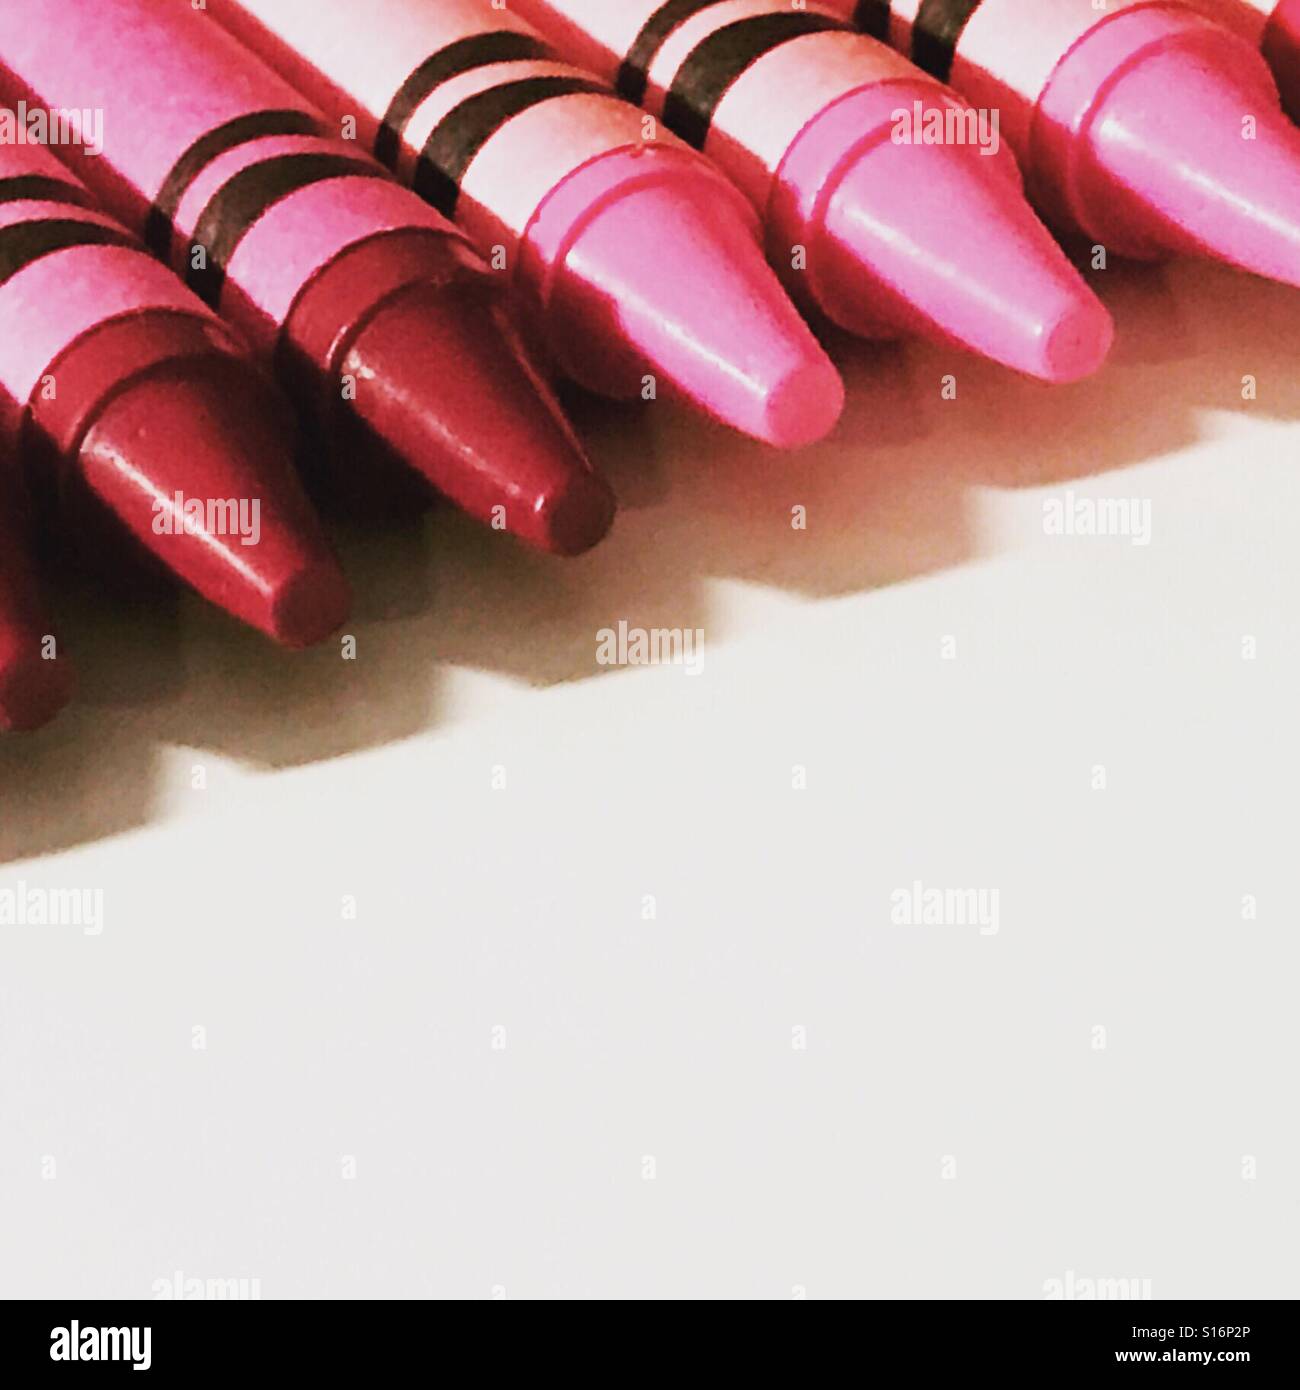 Rosa und roten Farbverlauf Buntstifte in einer Reihe.  Nahaufnahme Foto von Kreide Spitzen der bunten rot- und Pinktönen.  Buntstiften auf einem weißen Hintergrund Stockfoto